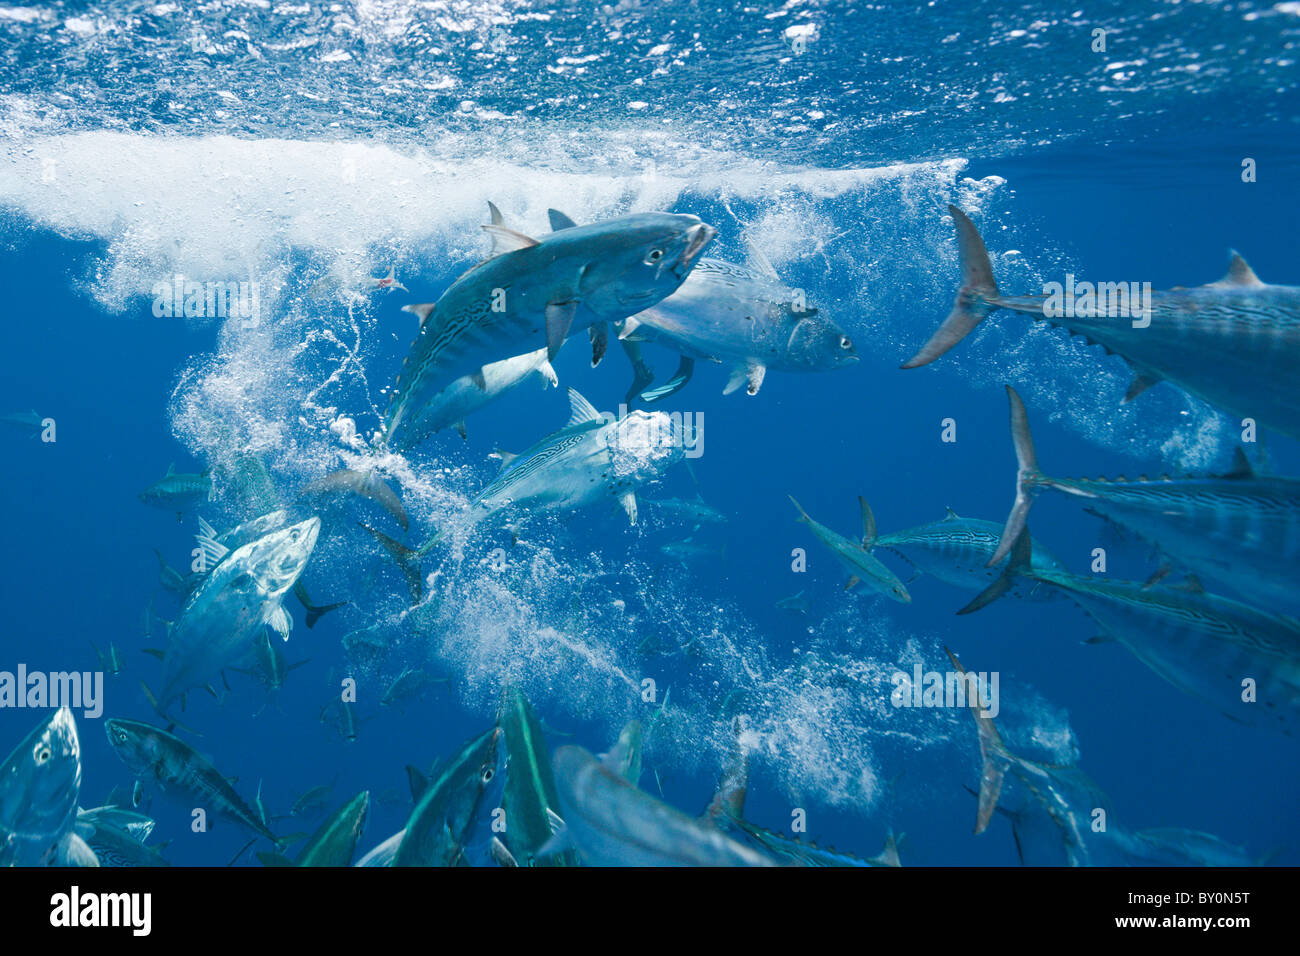 Bonitos hunting Sardines, Sarda sarda, Sardina pilchardus, Isla Mujeres, Yucatan Peninsula, Caribbean Sea, Mexico Stock Photo